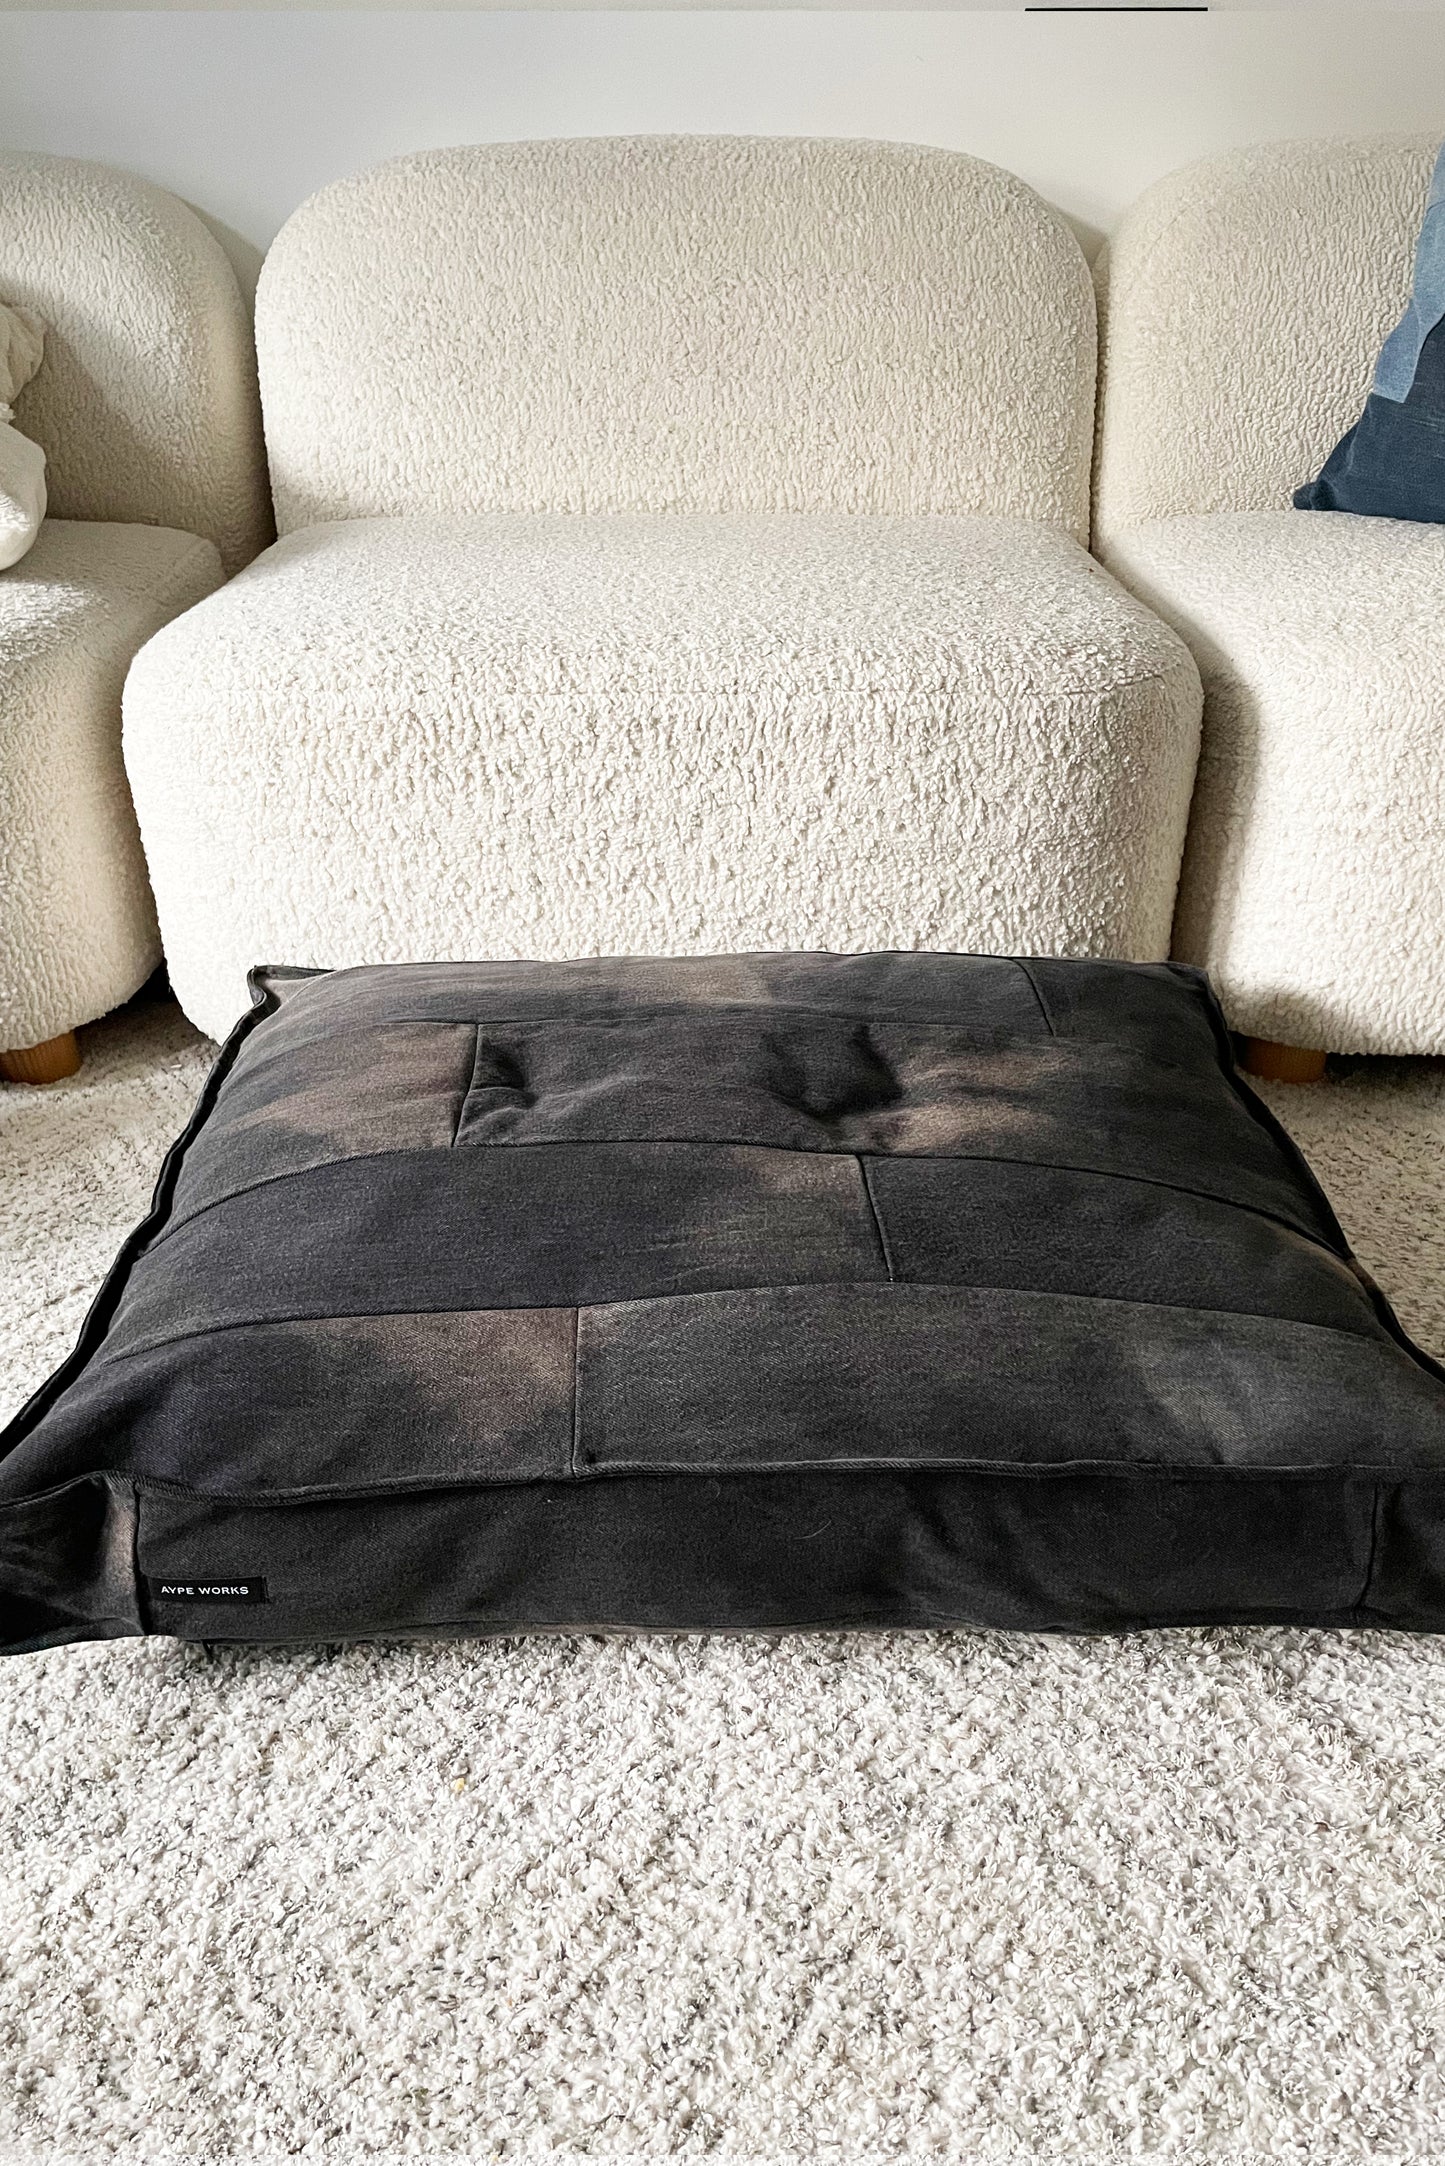 Black Dog Bed (Medium)